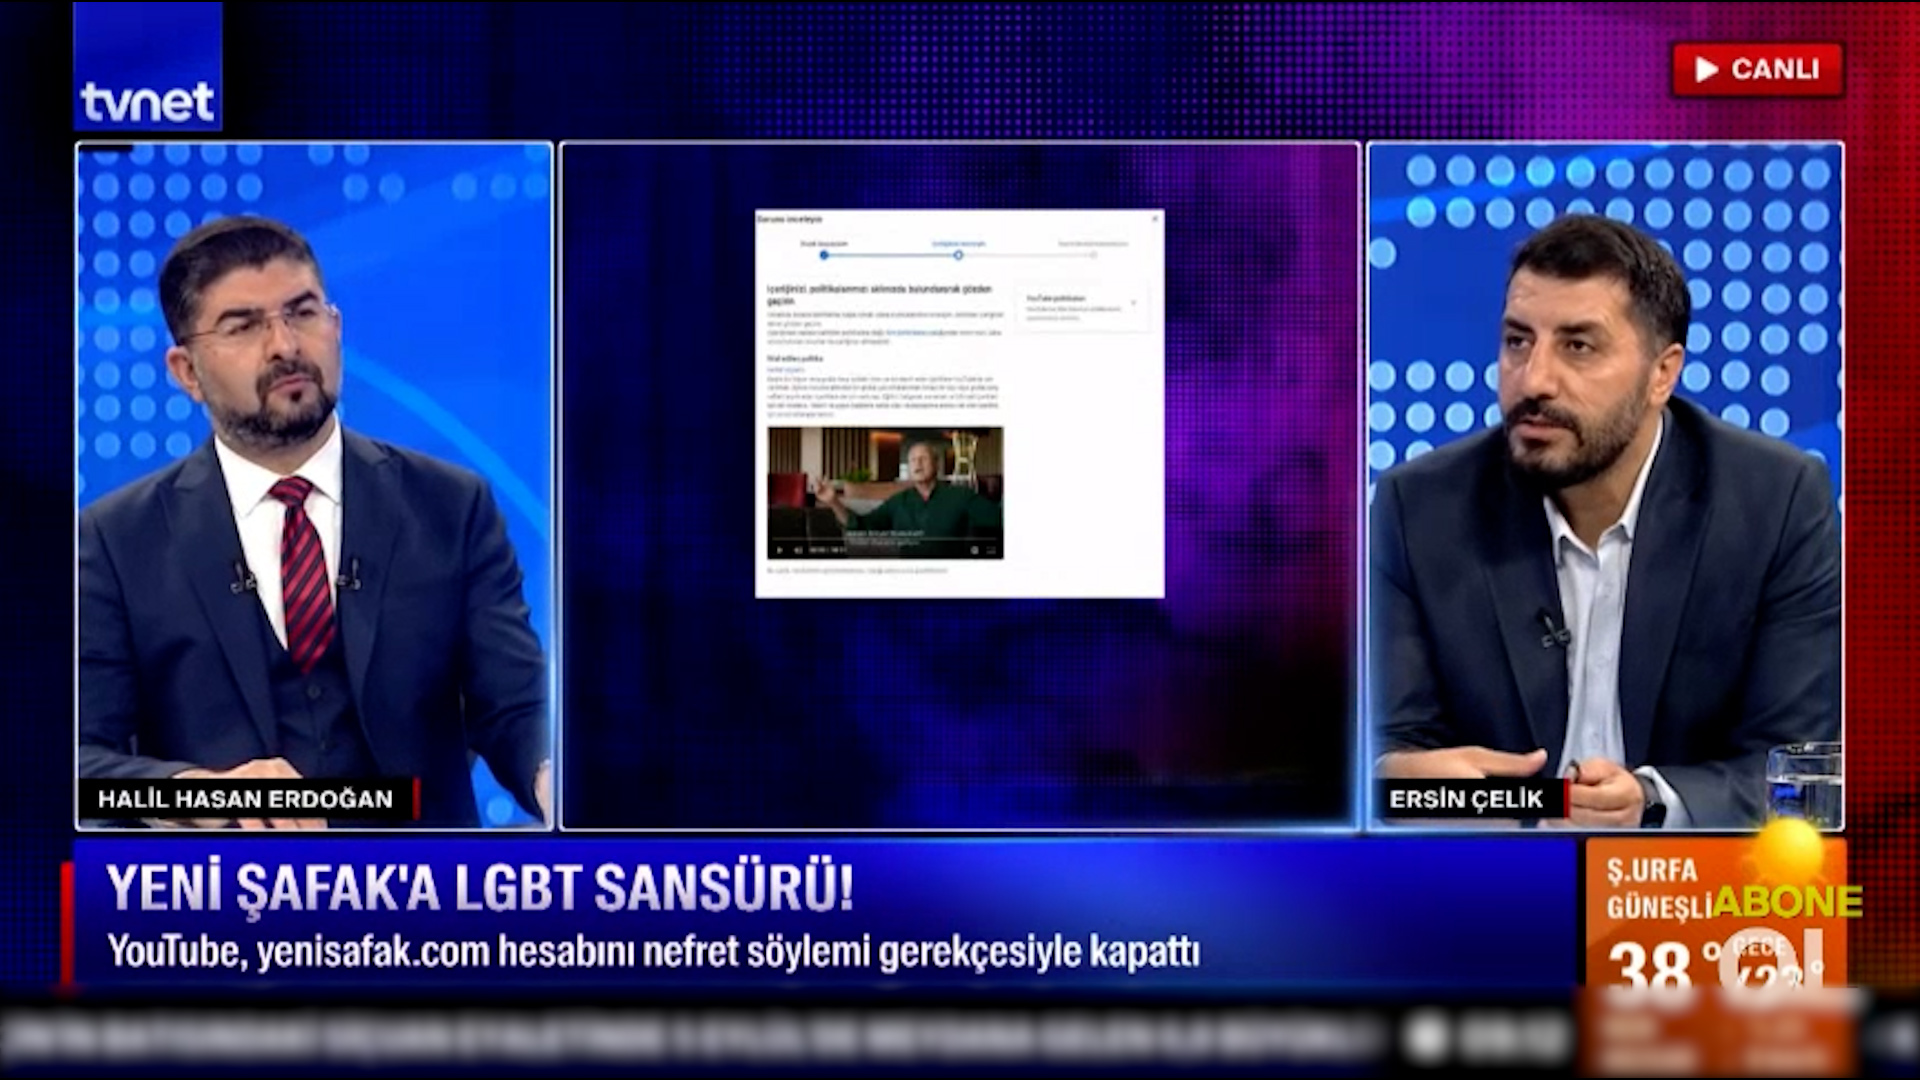 Gazeteci Ersin Çelik YouTube'un Yeni Şafak'a uyguladığı LGBT sansürü ile ilgili konuştu